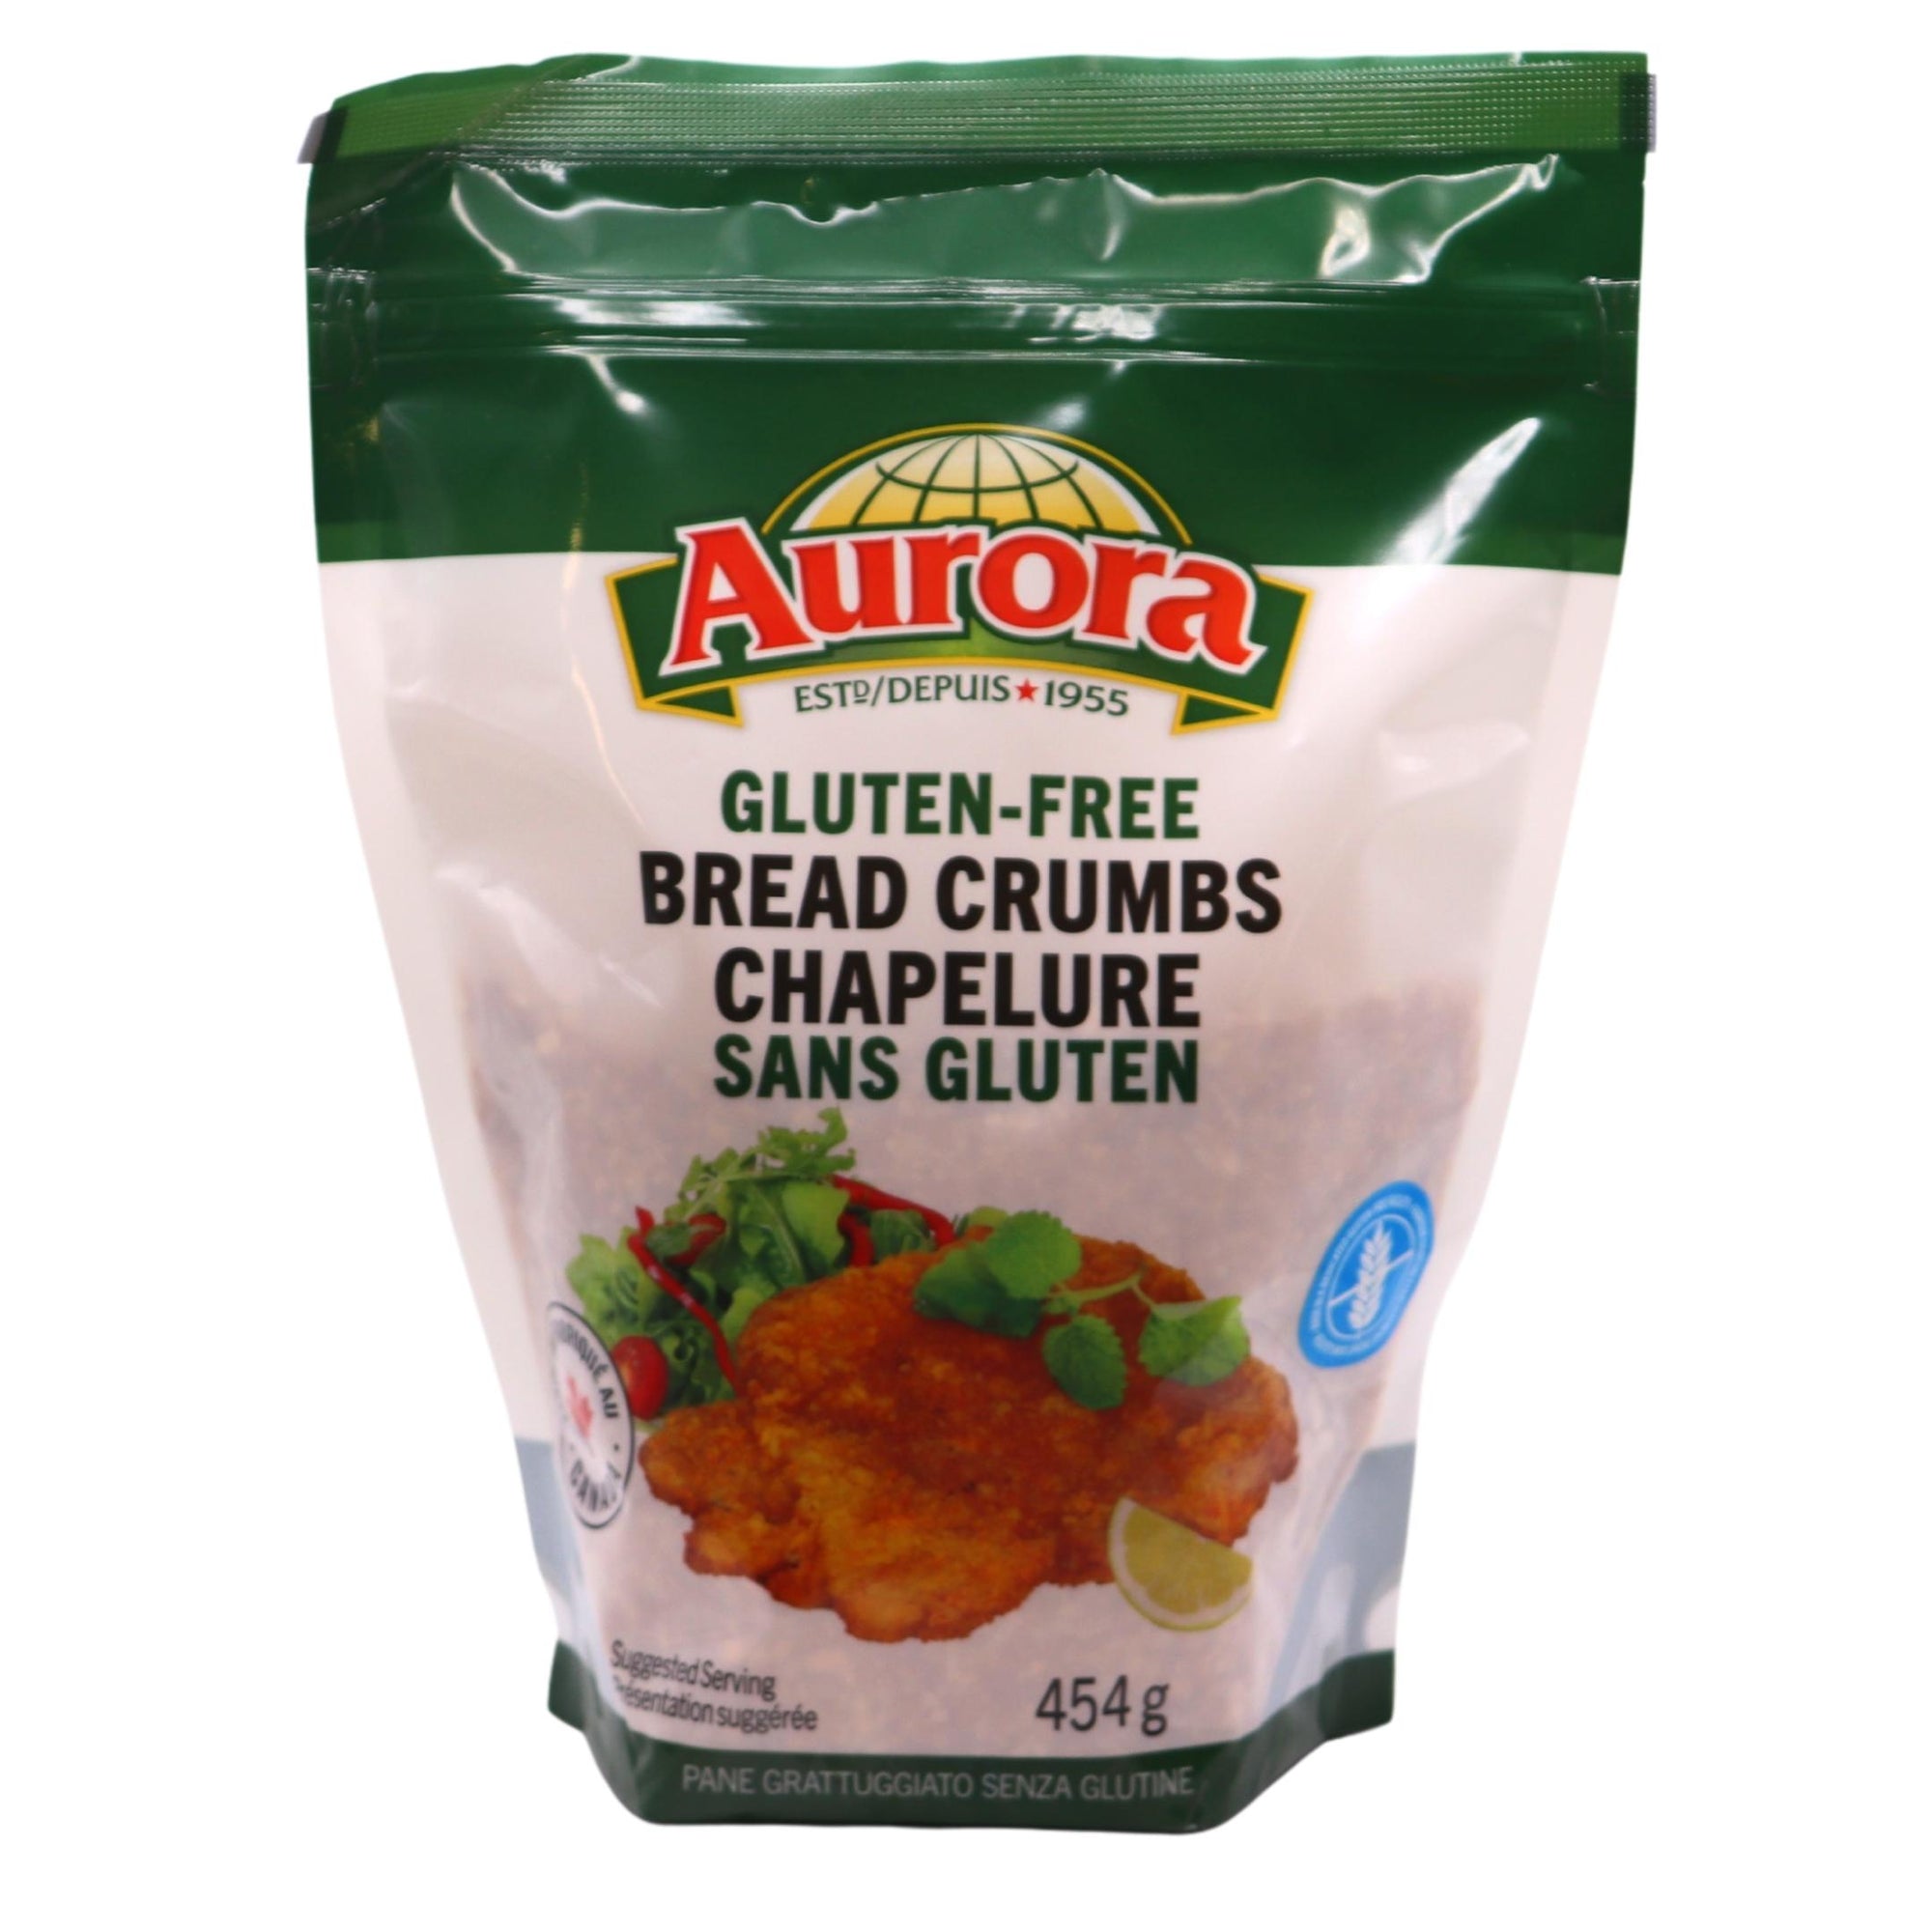 AURORA BREAD CRUMBS GLUTFREE 454G